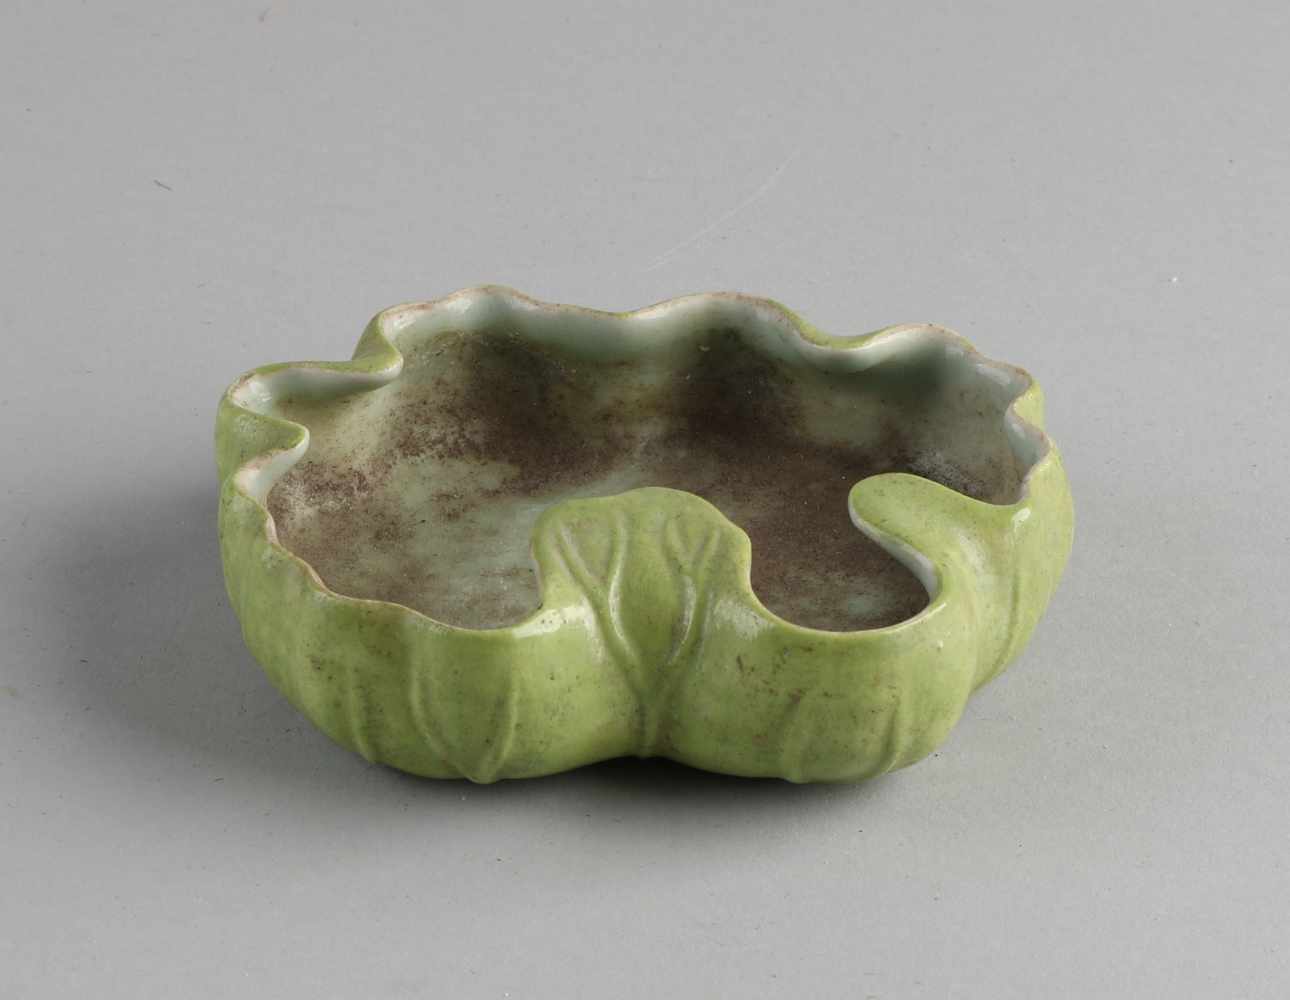 Chinesische Porzellan-Wasserschale in Seerosenblattform. Mit grüner Glasur und Bodenmarkierung.